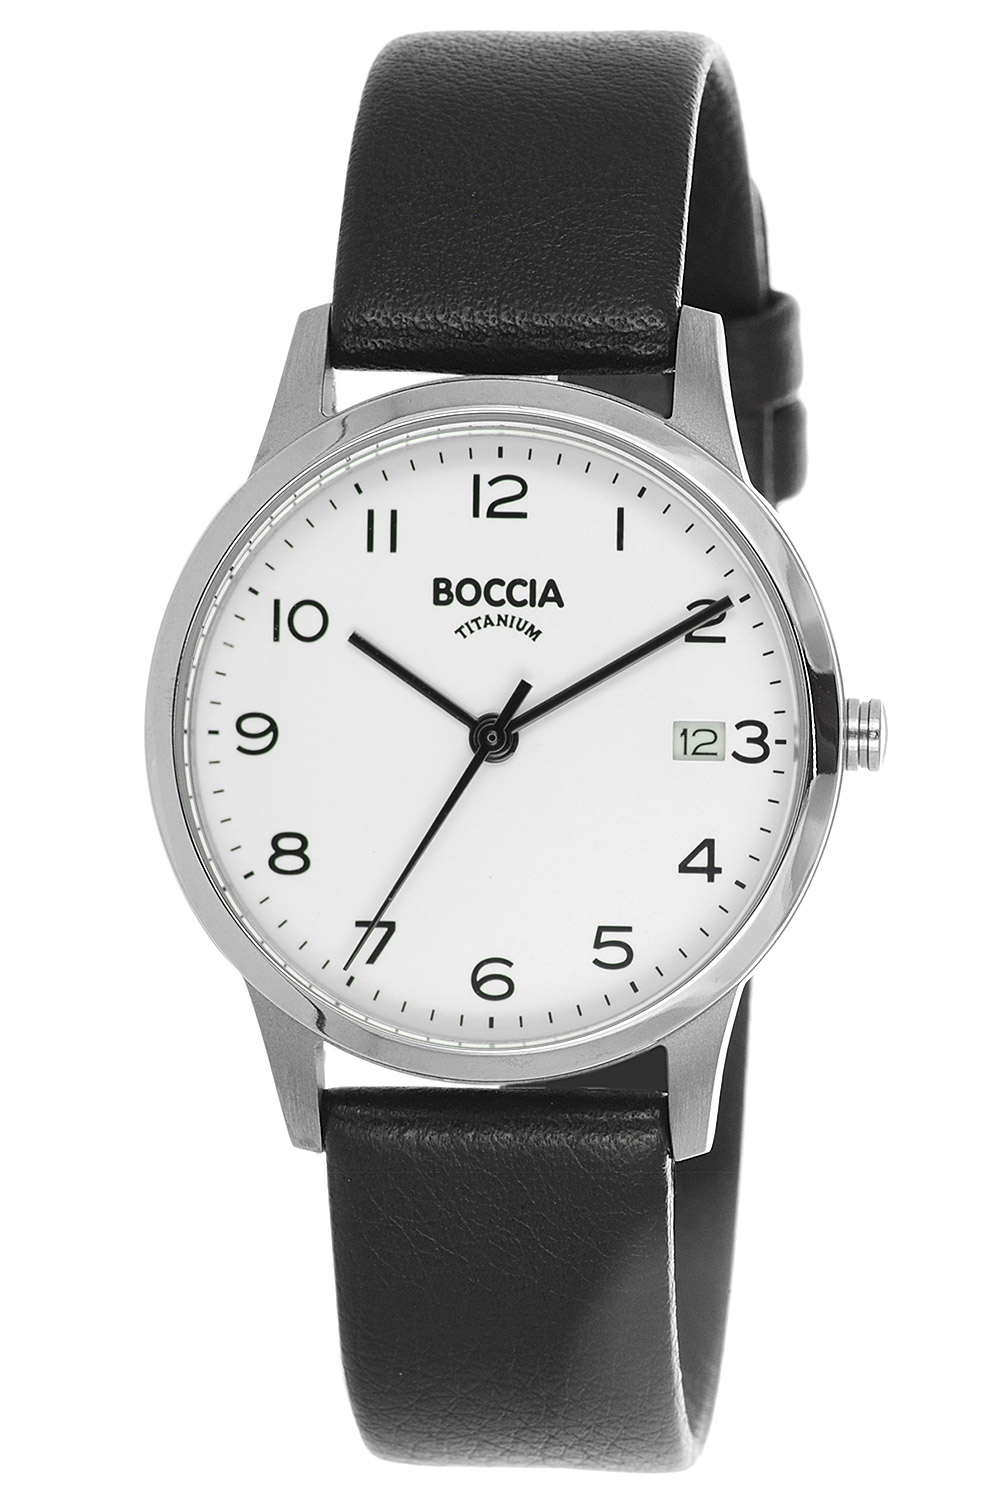 Boccia Damenuhren günstig online kaufen uhrcenter Shop • Uhren